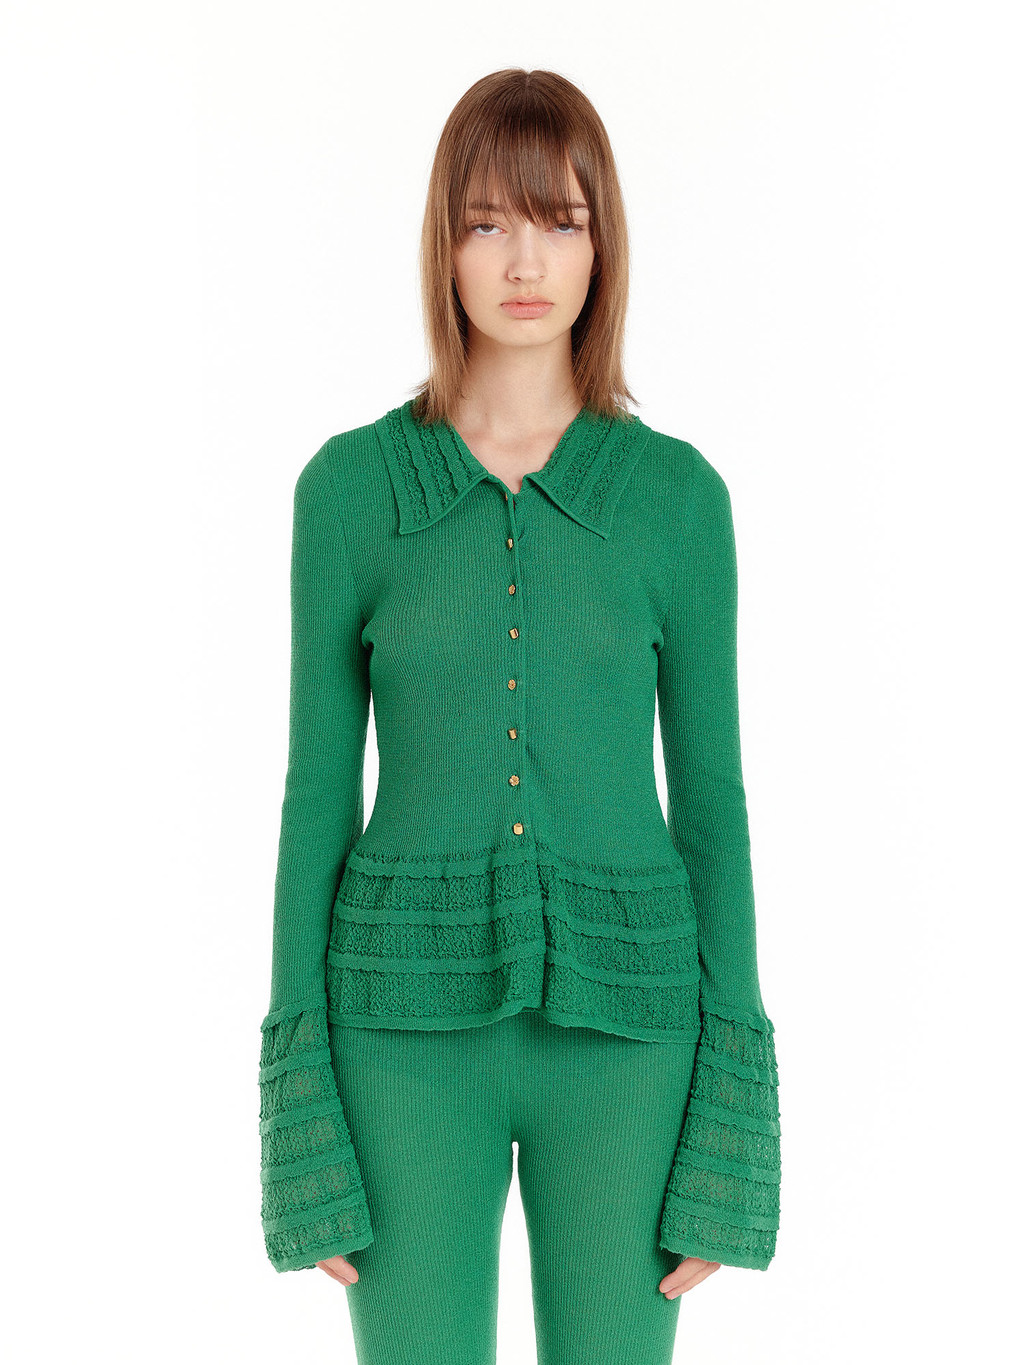 URILL Frilled Knit Shirt - Green : EENK SHOP